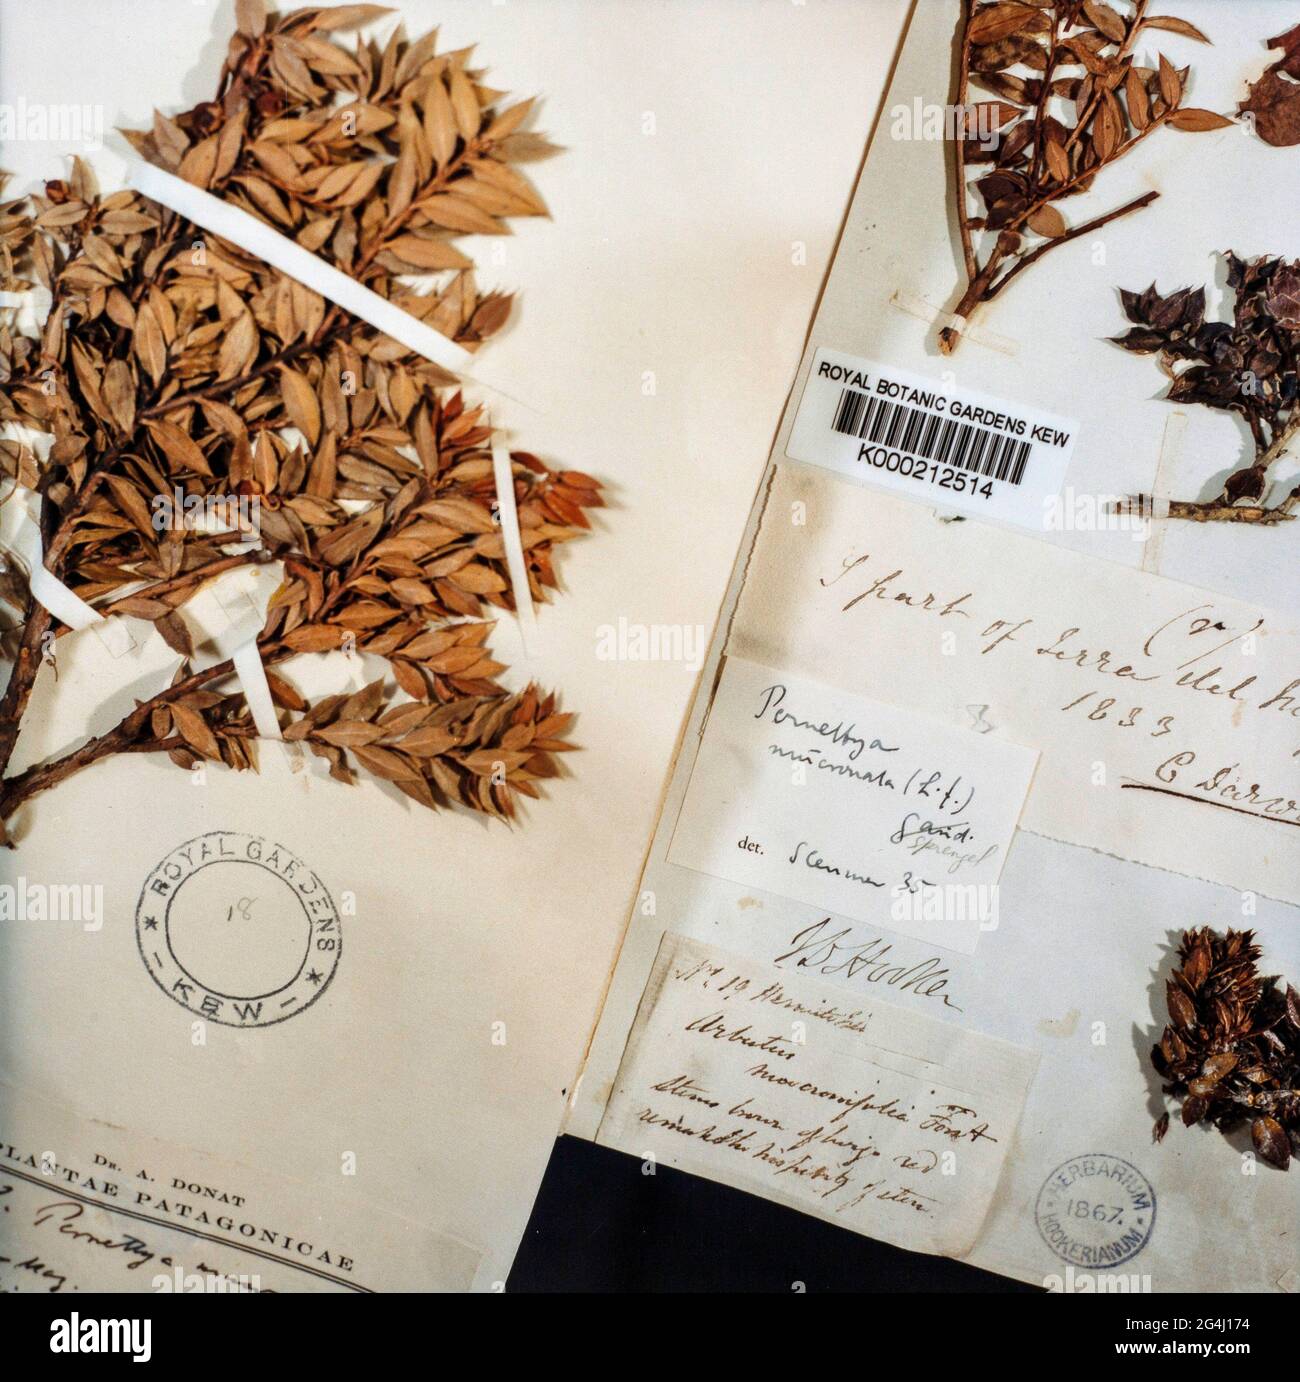 Feuilles d'herbier pressées et séchées spécimens de Patagonie recueillis par Charles Darwin aux jardins botaniques royaux de Kew, Londres, Angleterre Banque D'Images